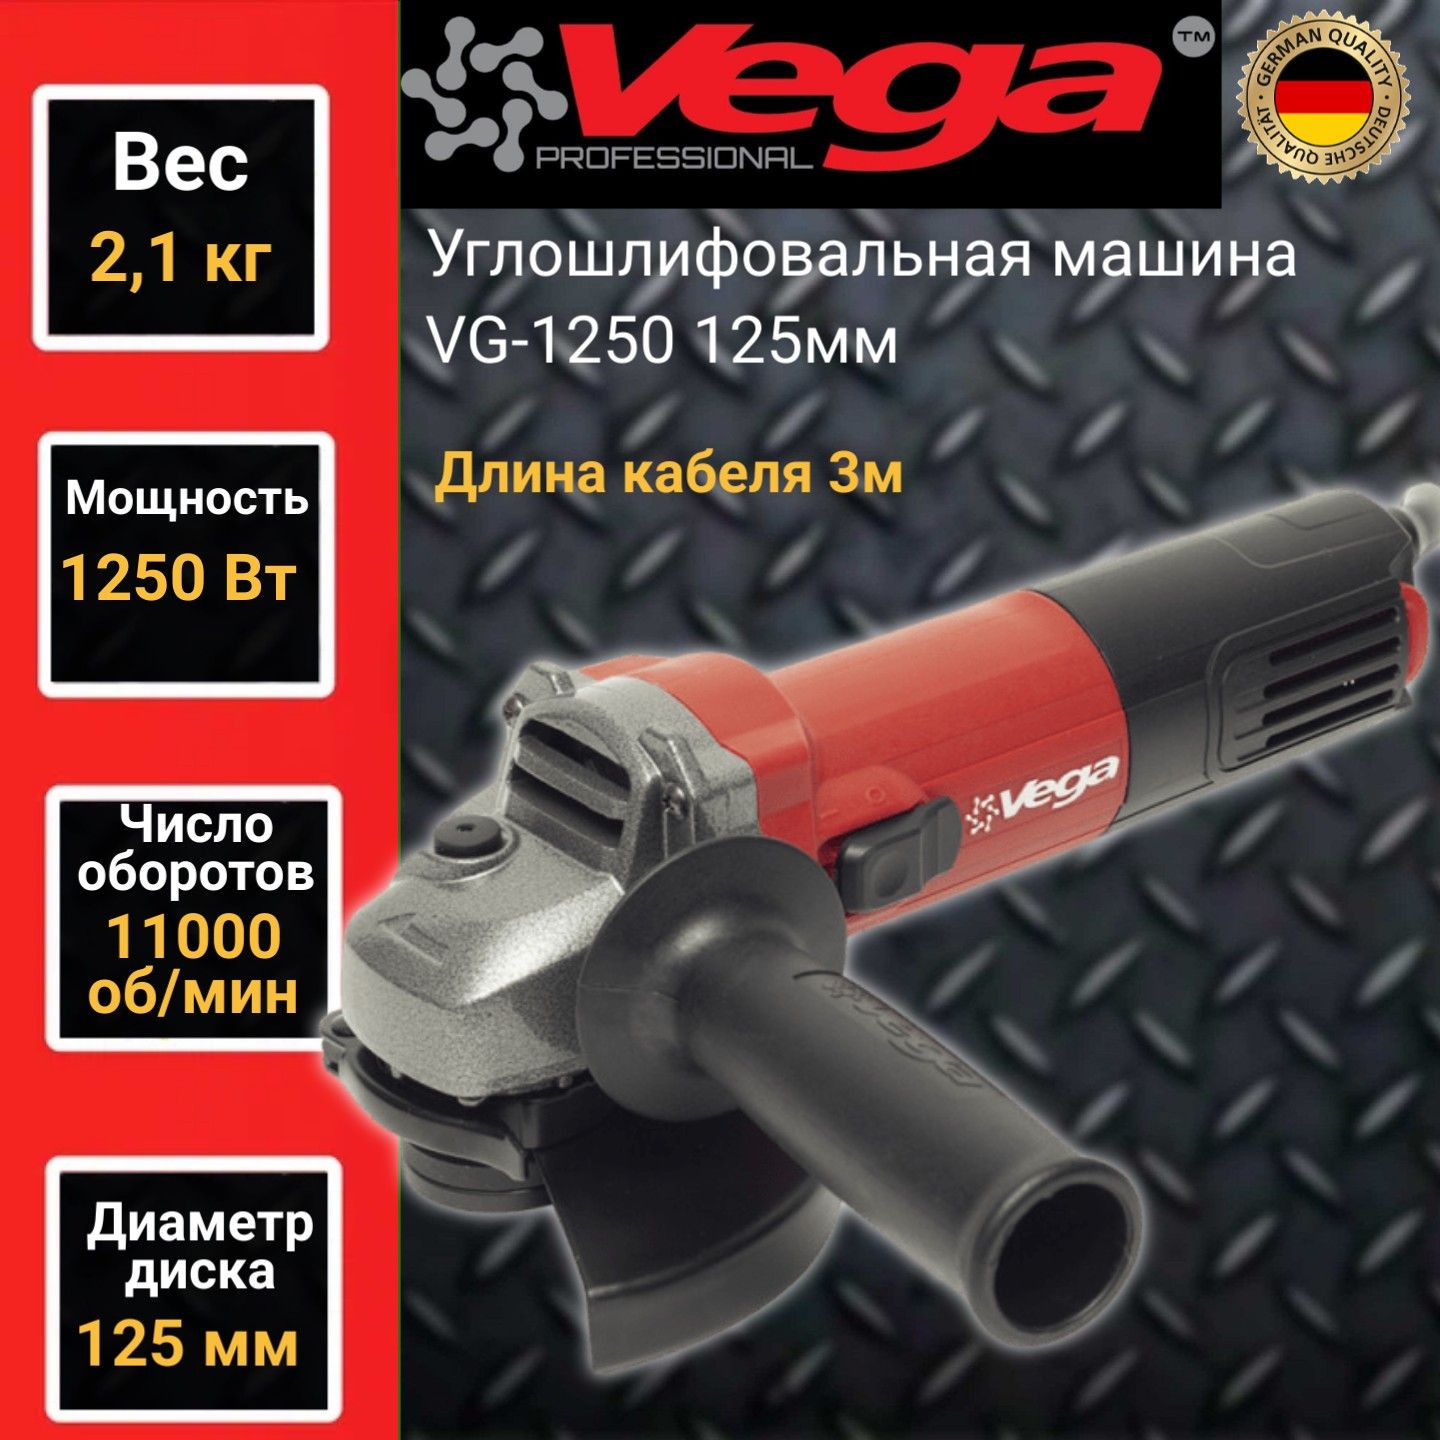 Углошлифовальная машина болгарка Vega Professional VG 1250, 125мм круг,1250Вт,11000об/мин углошлифовальная машина парма ушм 01 125 910 900вт 11000об мин рез шпин m14 d 125мм